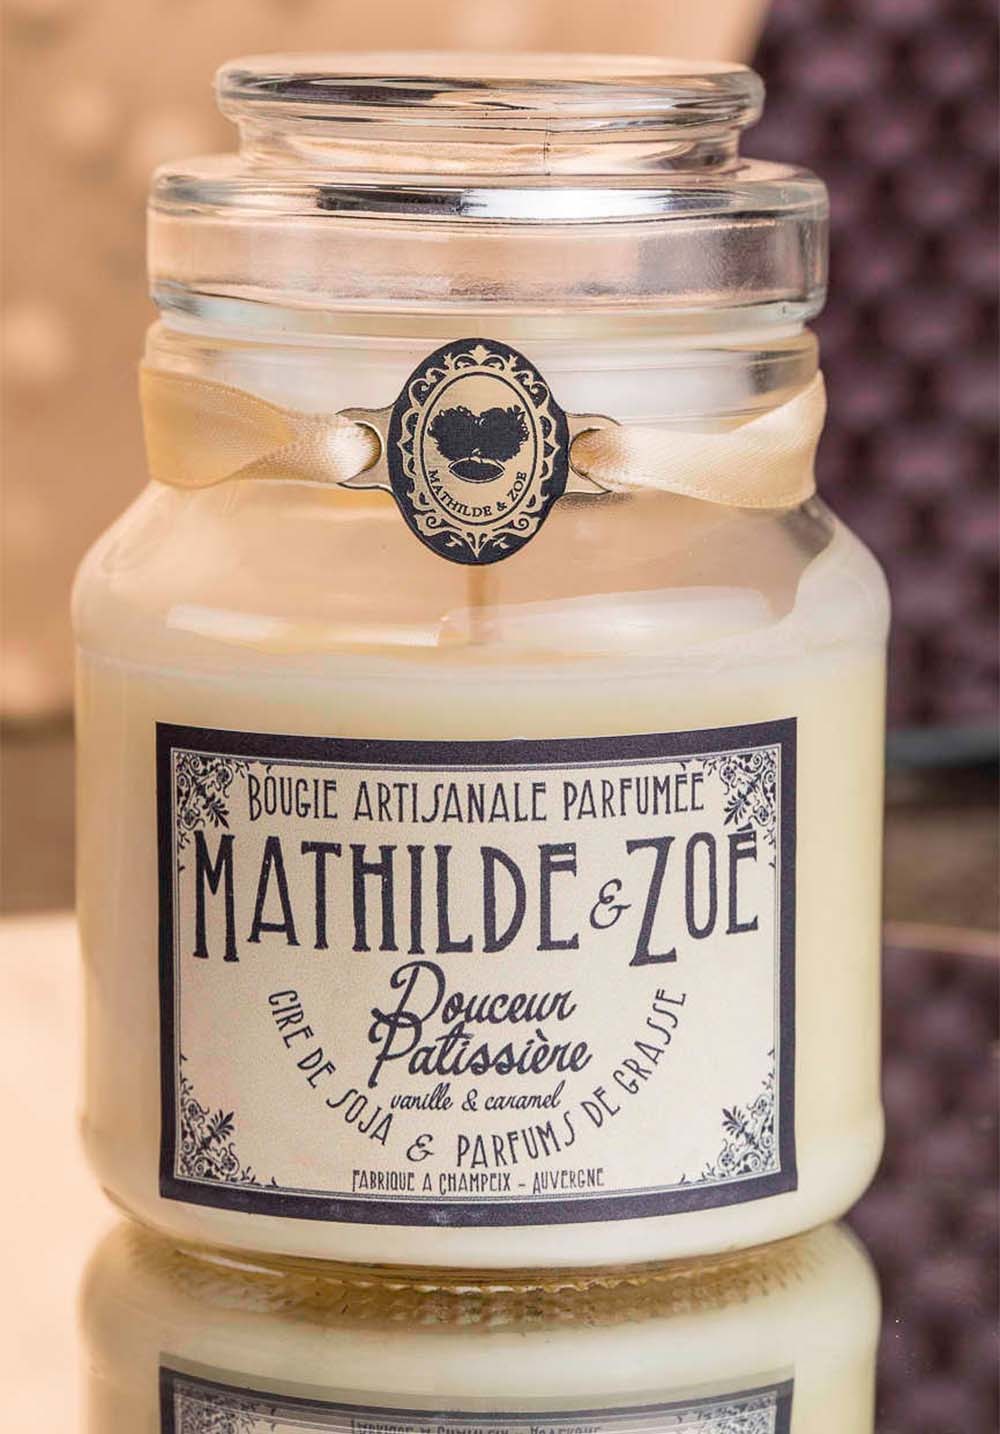 Bougie artisanale parfumée Mathilde et Zoé - Douceur patissière